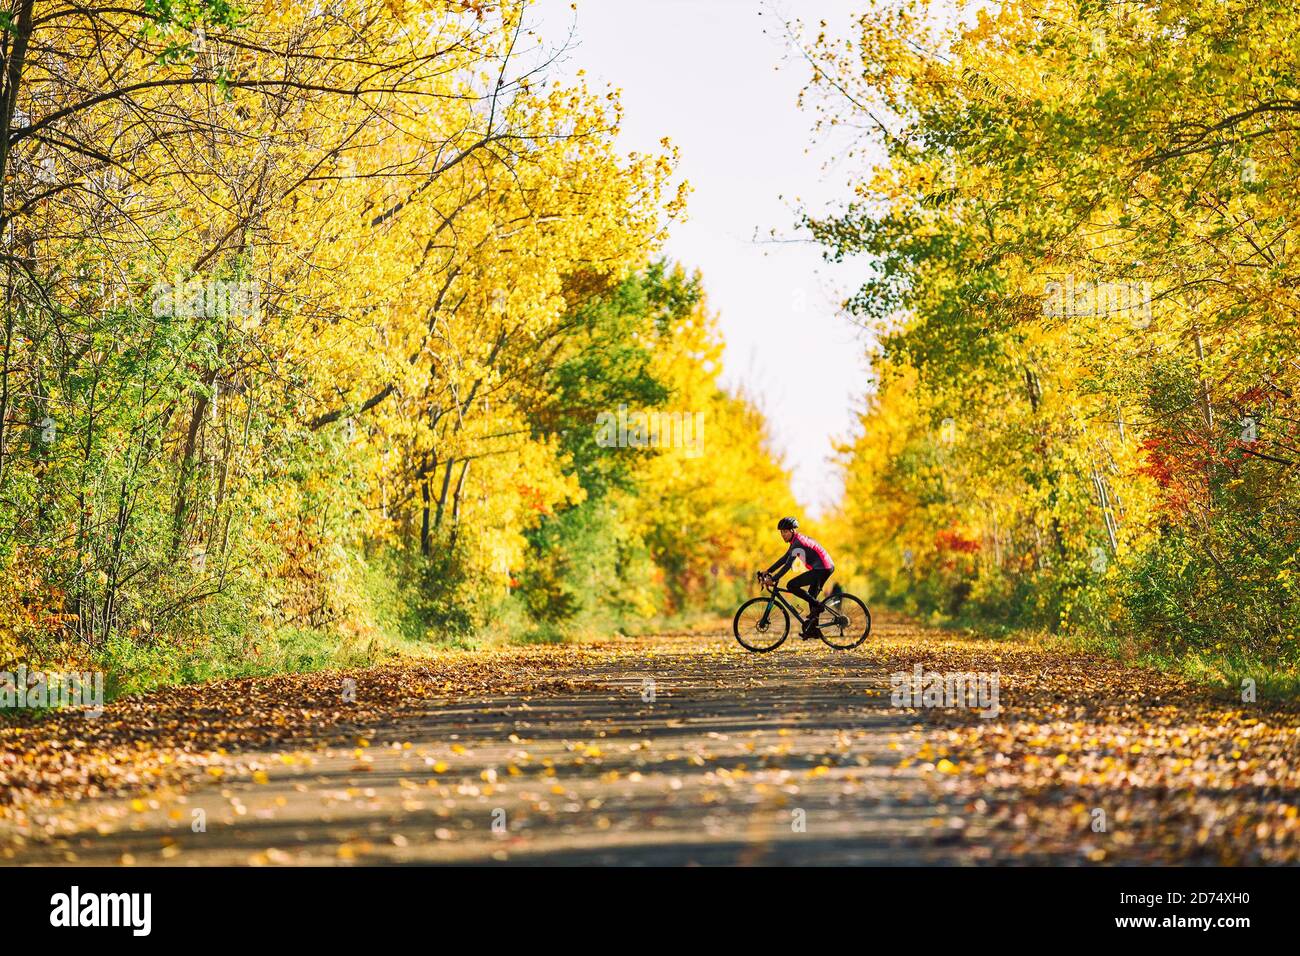 Deportes bicicleta al aire libre ejercicio mujer ciclismo en bicicleta de carretera en la naturaleza del parque. Otoño follaje árboles ciclismo paisaje Foto de stock